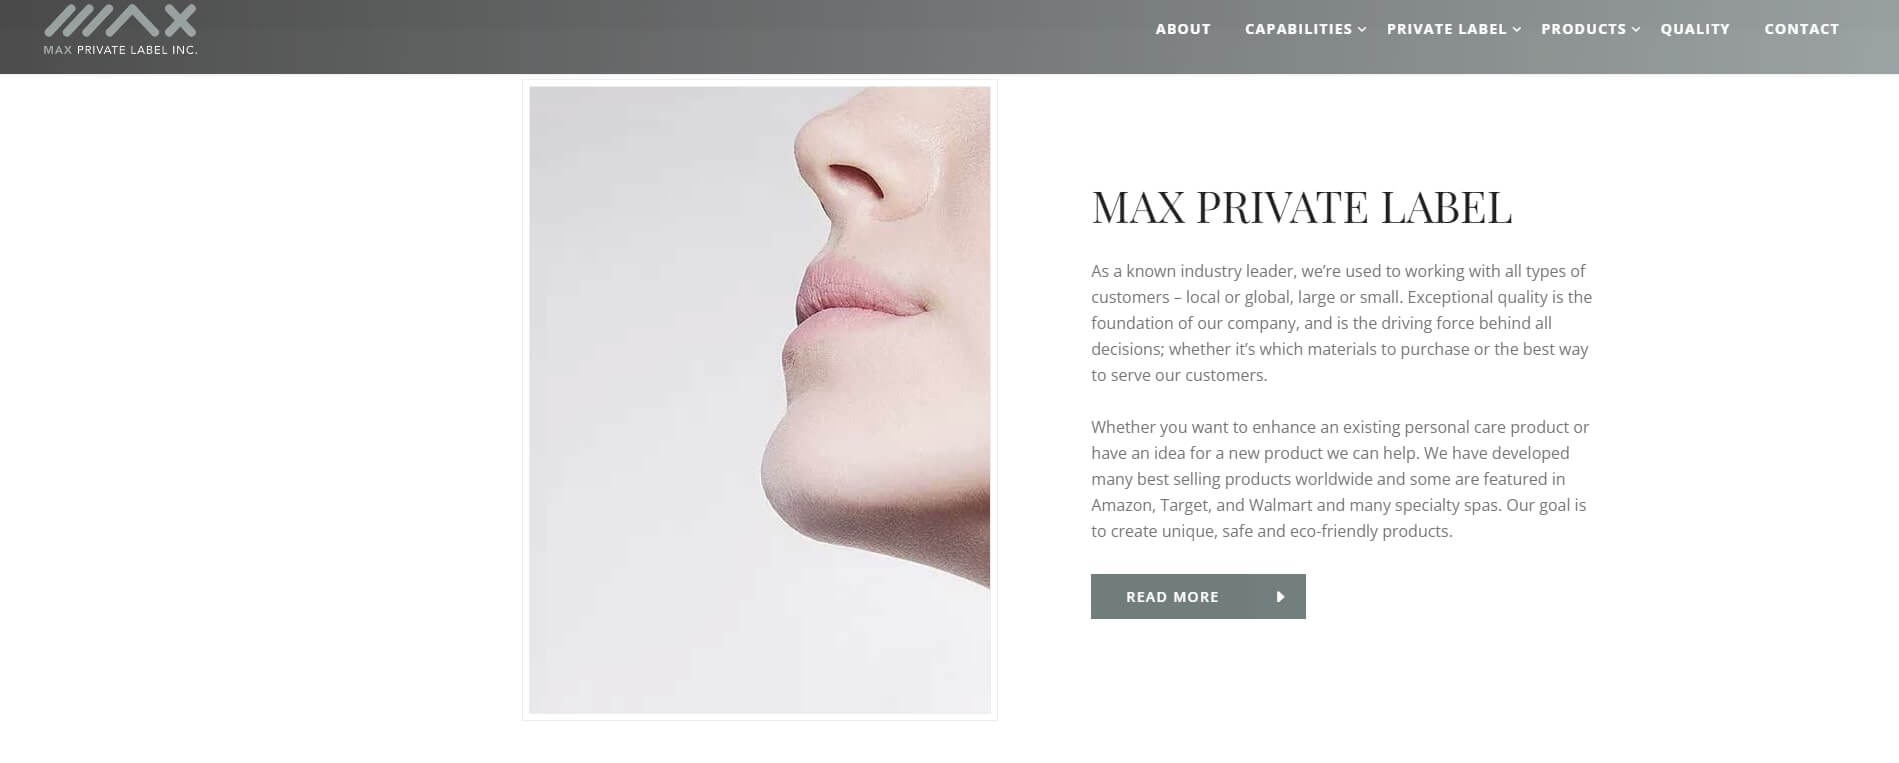 Max Private Label